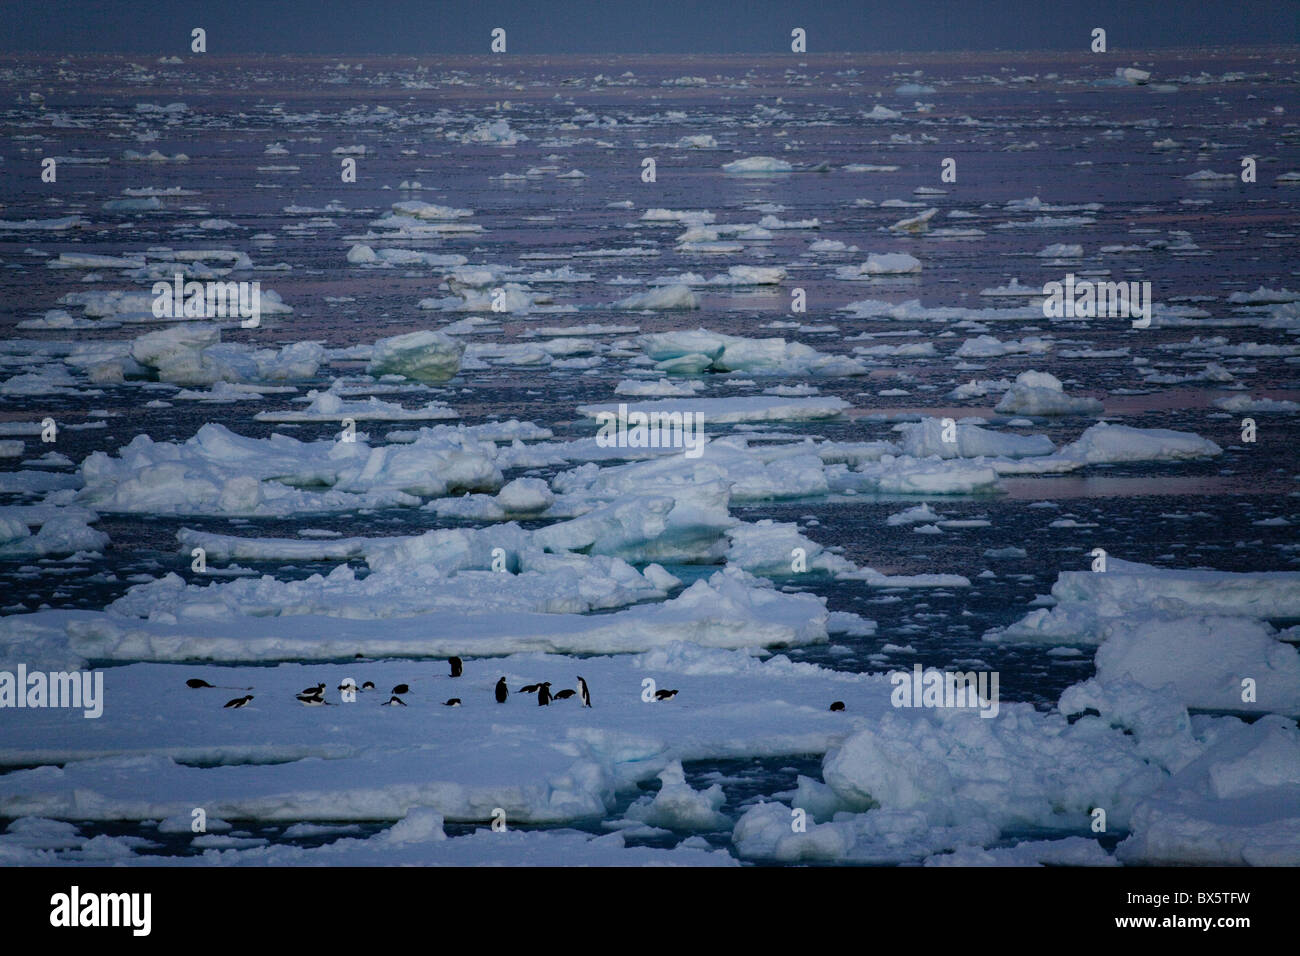 Les manchots Adélie (Pygoscelis adeliae) sur la banquise à minuit, le sud de l'océan, l'Antarctique, régions polaires Banque D'Images